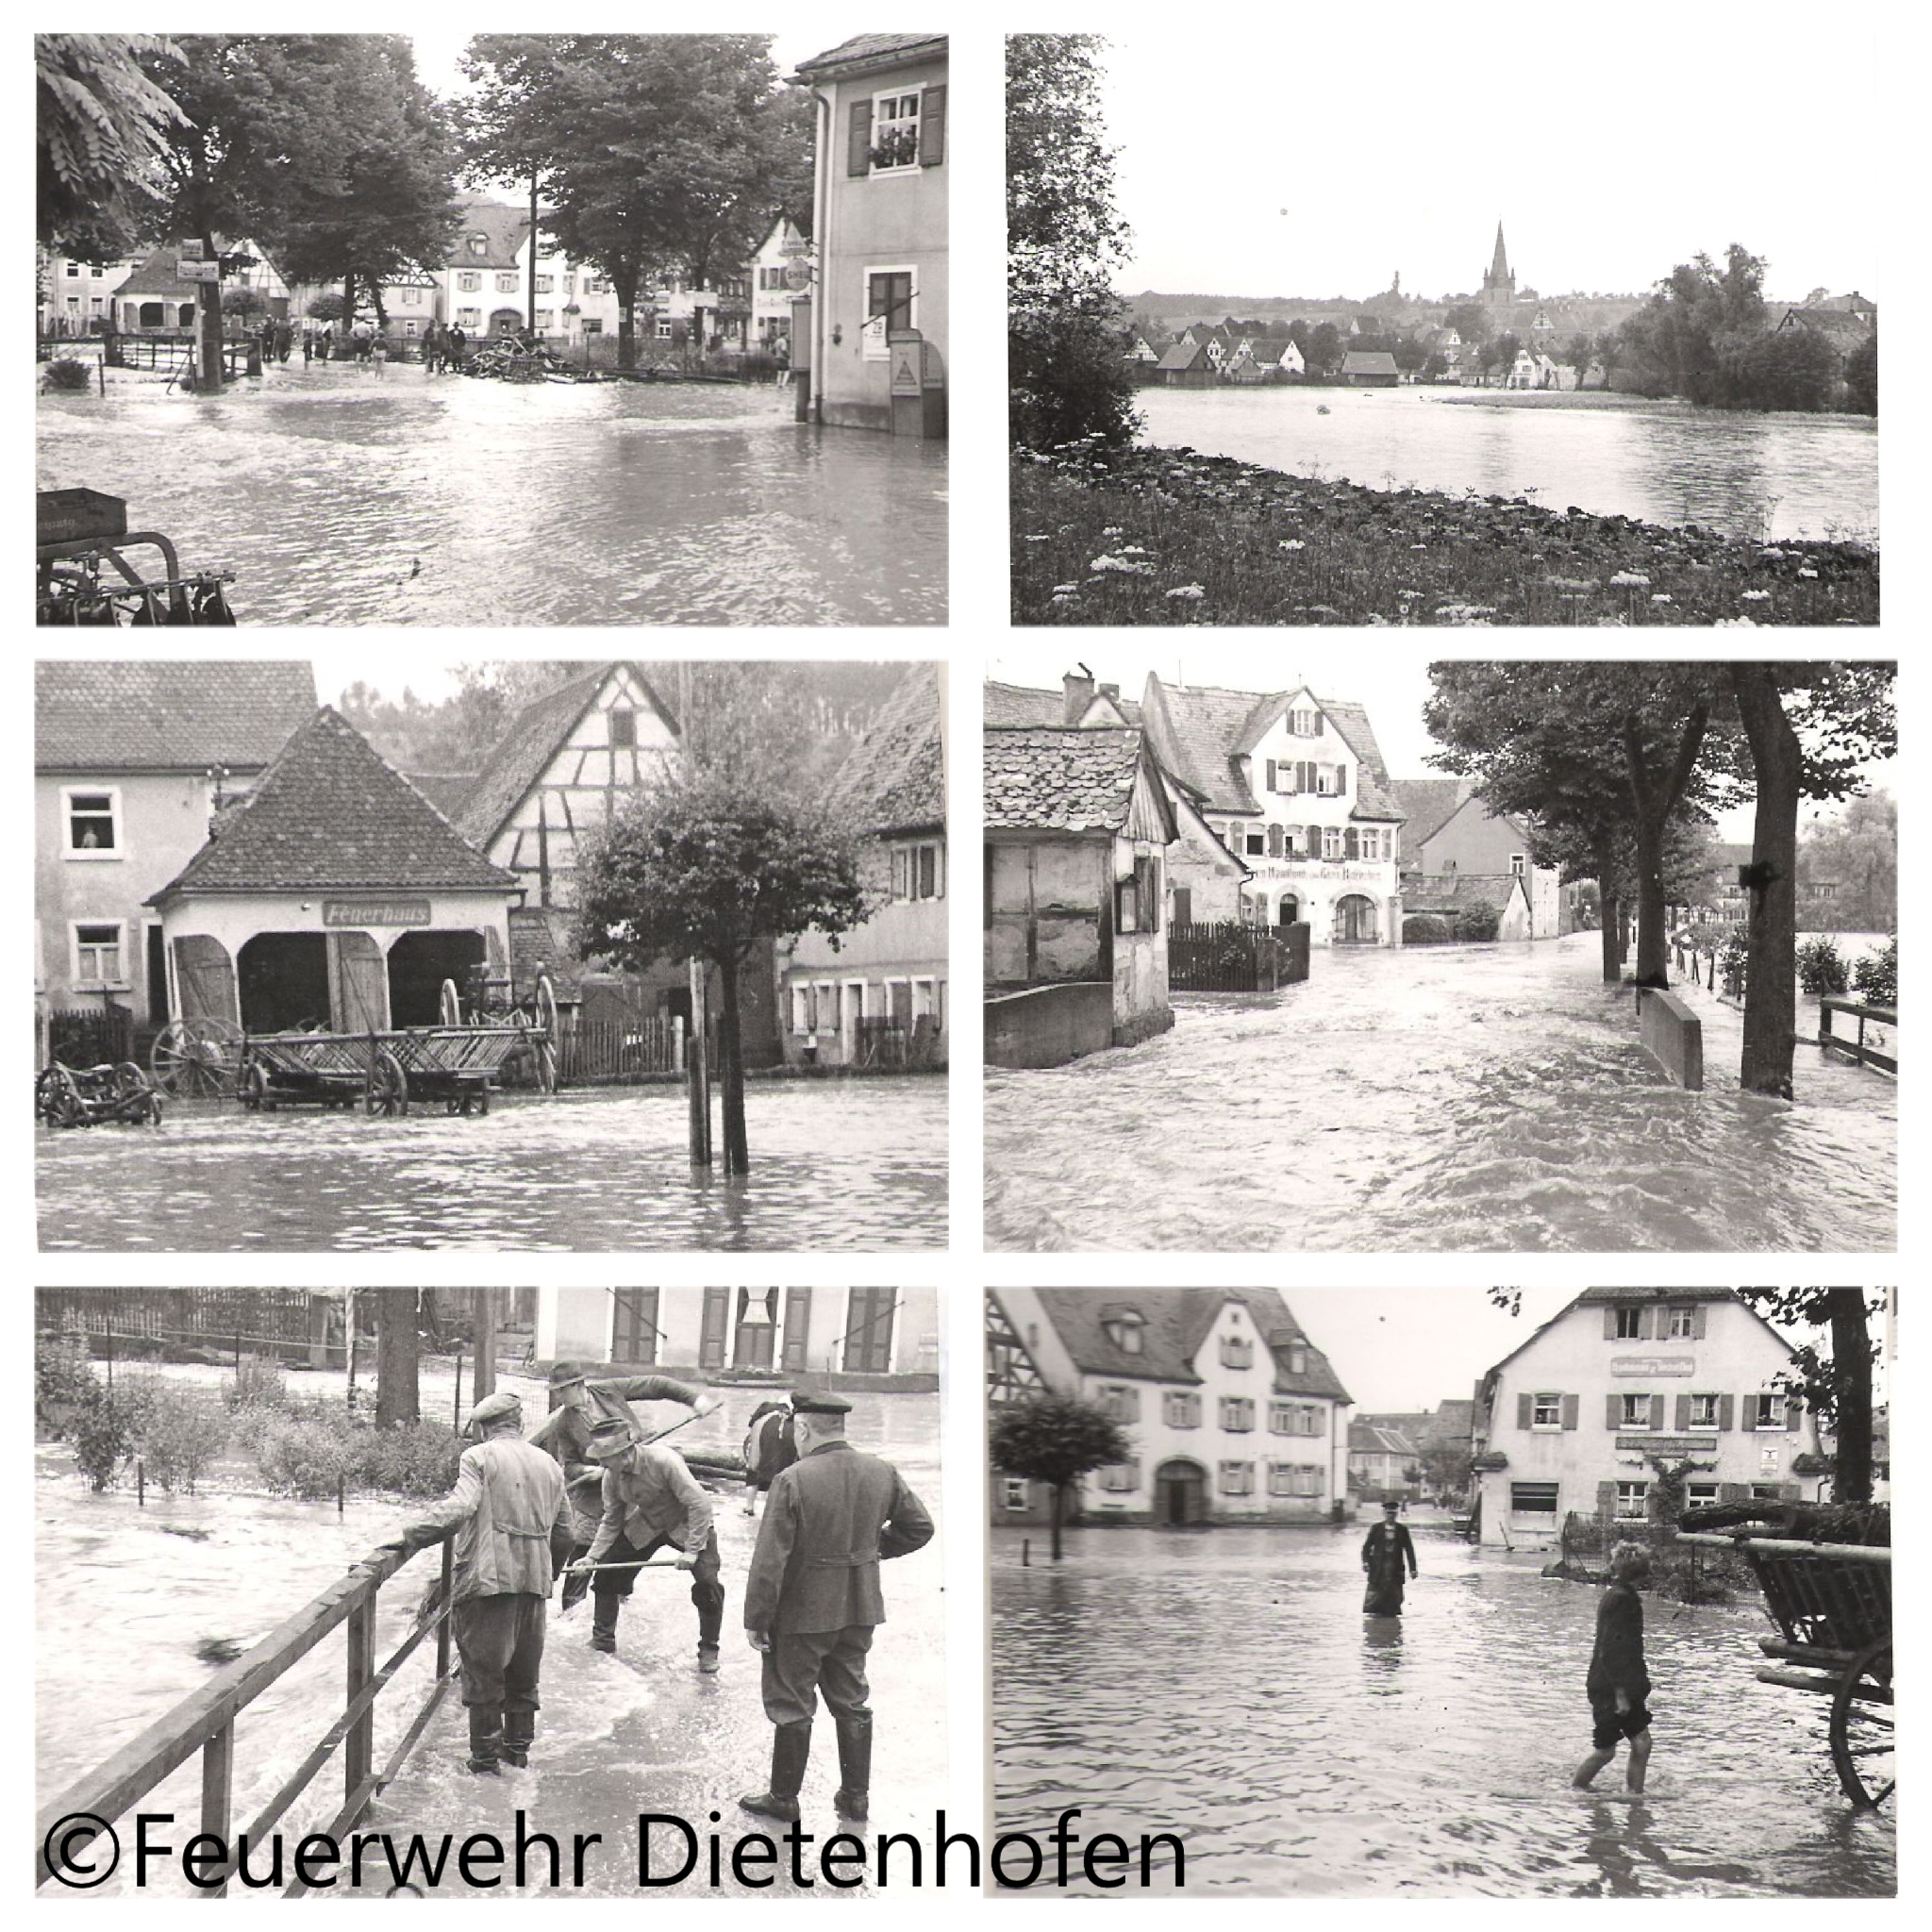 Die Feuerwehr Dietenhofen im Wandel der Zeit – Hochwasser im 2. Weltkrieg